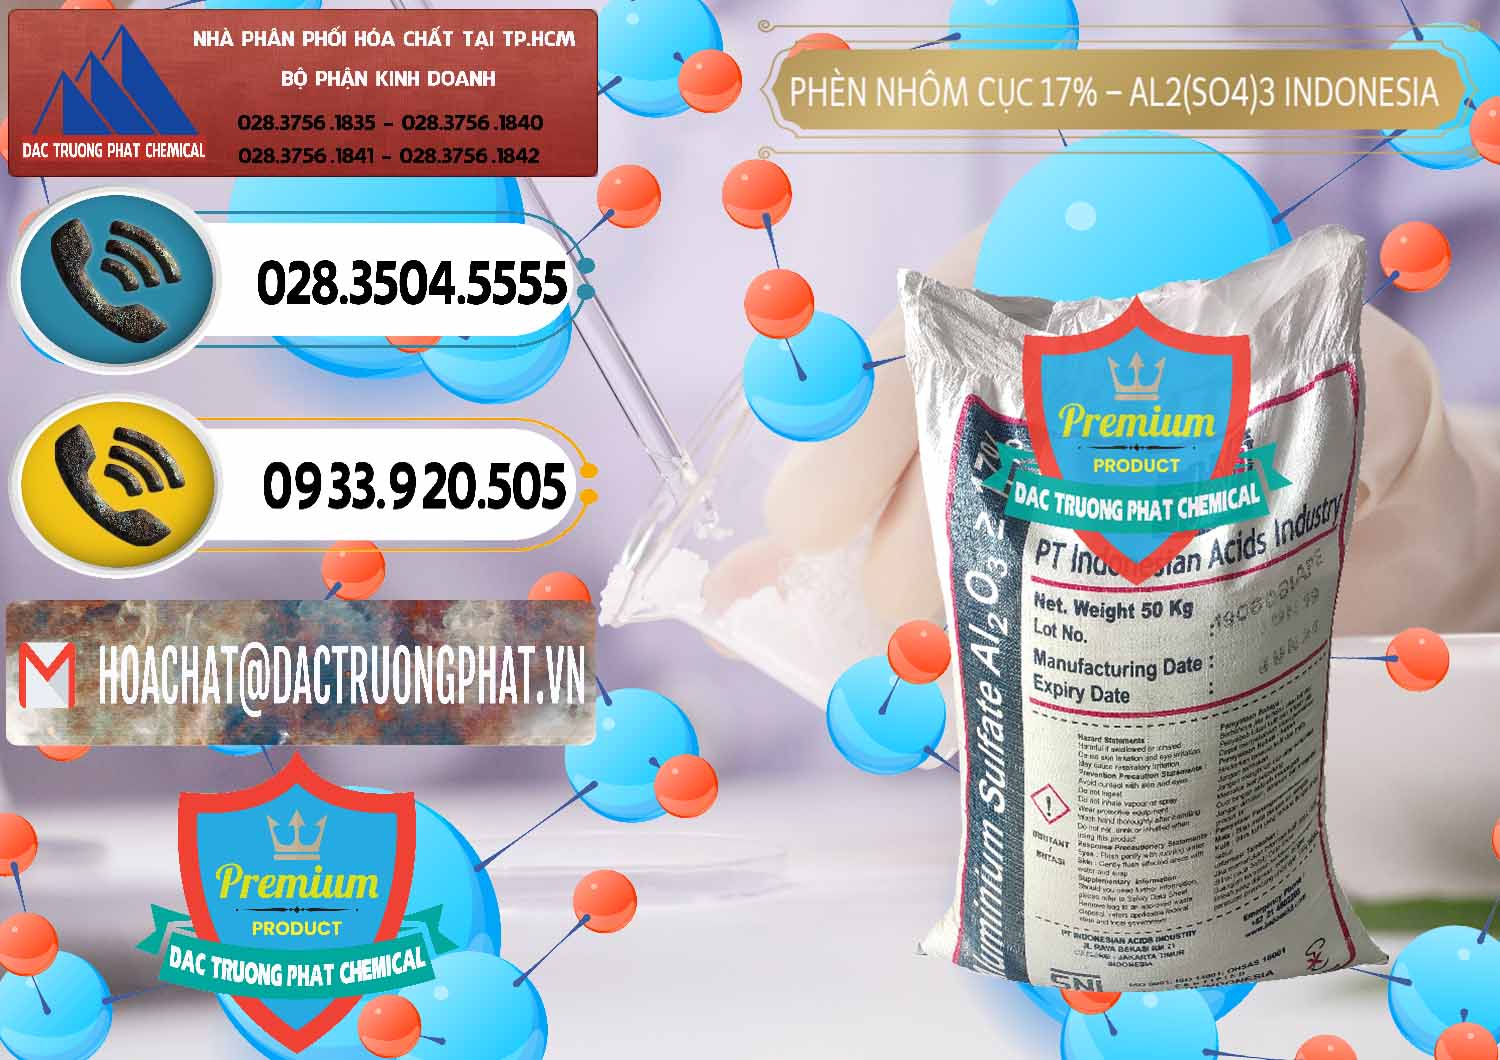 Nơi cung cấp và bán Phèn Nhôm Cục - Al2(SO4)3 17% bao 50kg Indonesia - 0113 - Đơn vị chuyên cung cấp _ nhập khẩu hóa chất tại TP.HCM - hoachatdetnhuom.vn